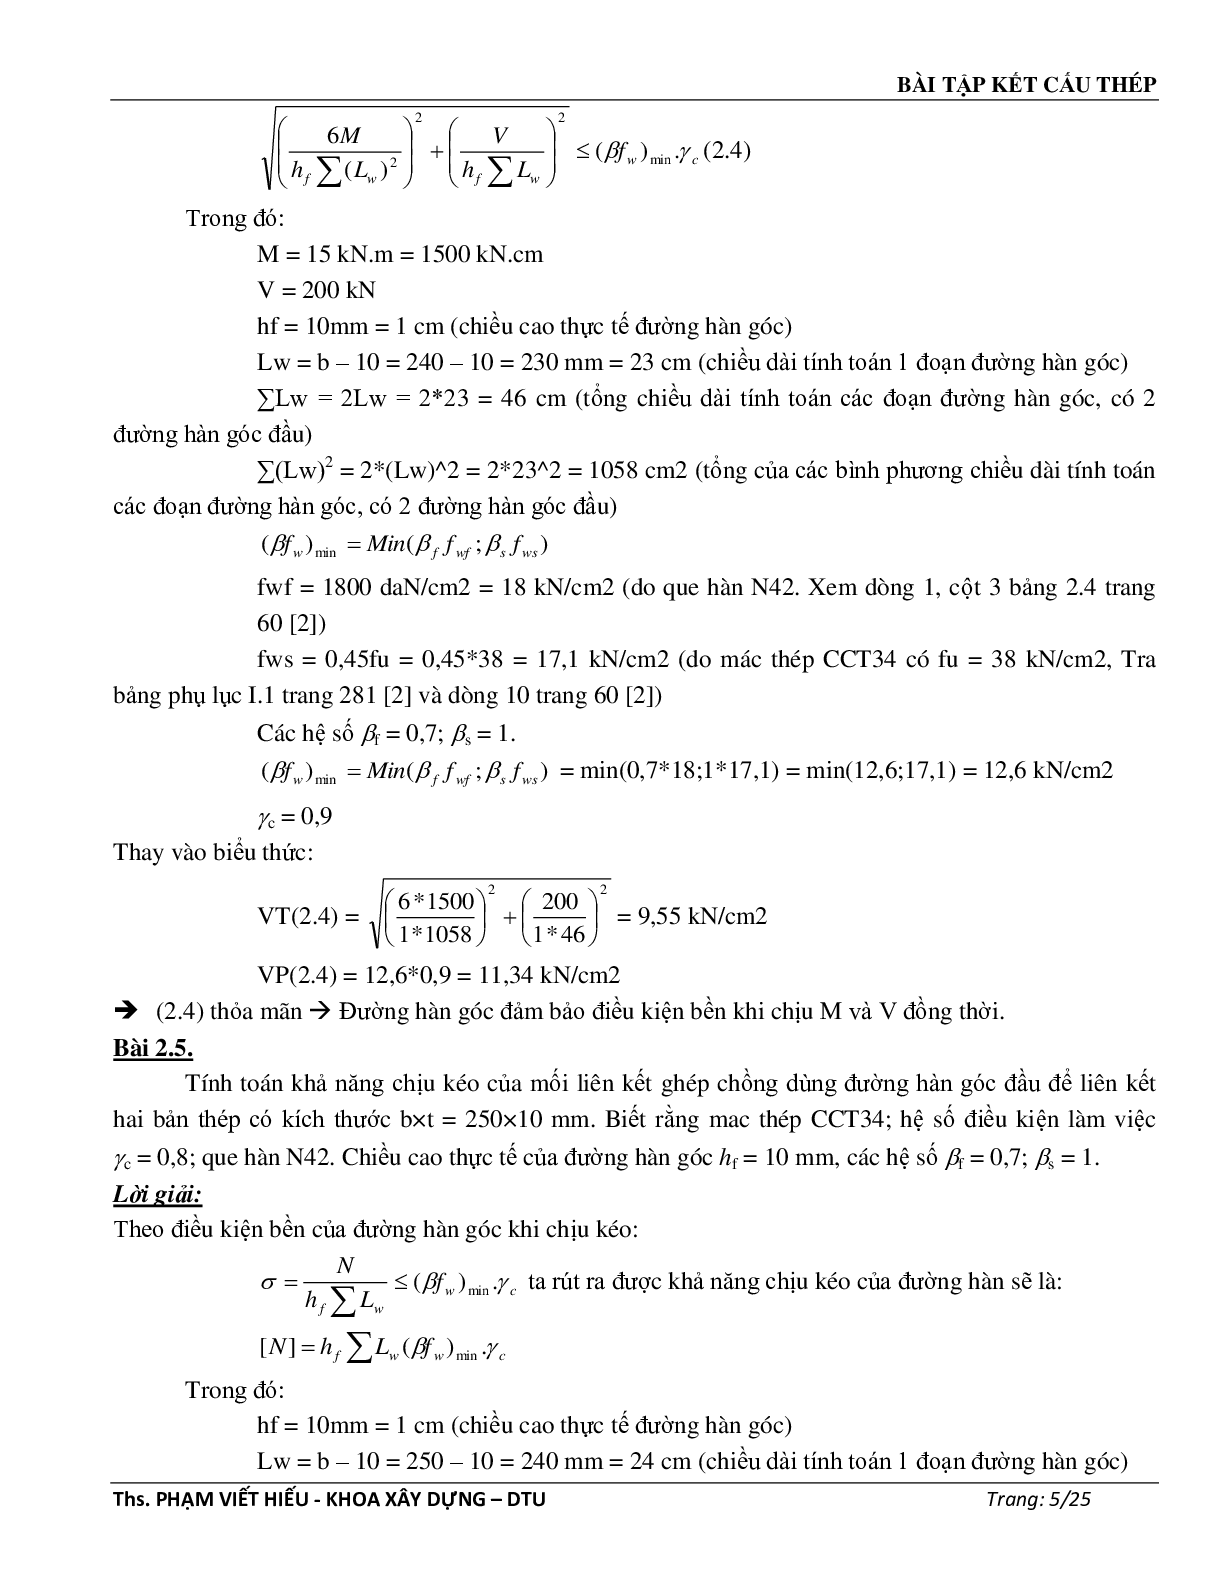 Ngân hàng bài tập môn Kết cấu thép (có đáp án) | Trường Đại học Duy Tân (trang 6)